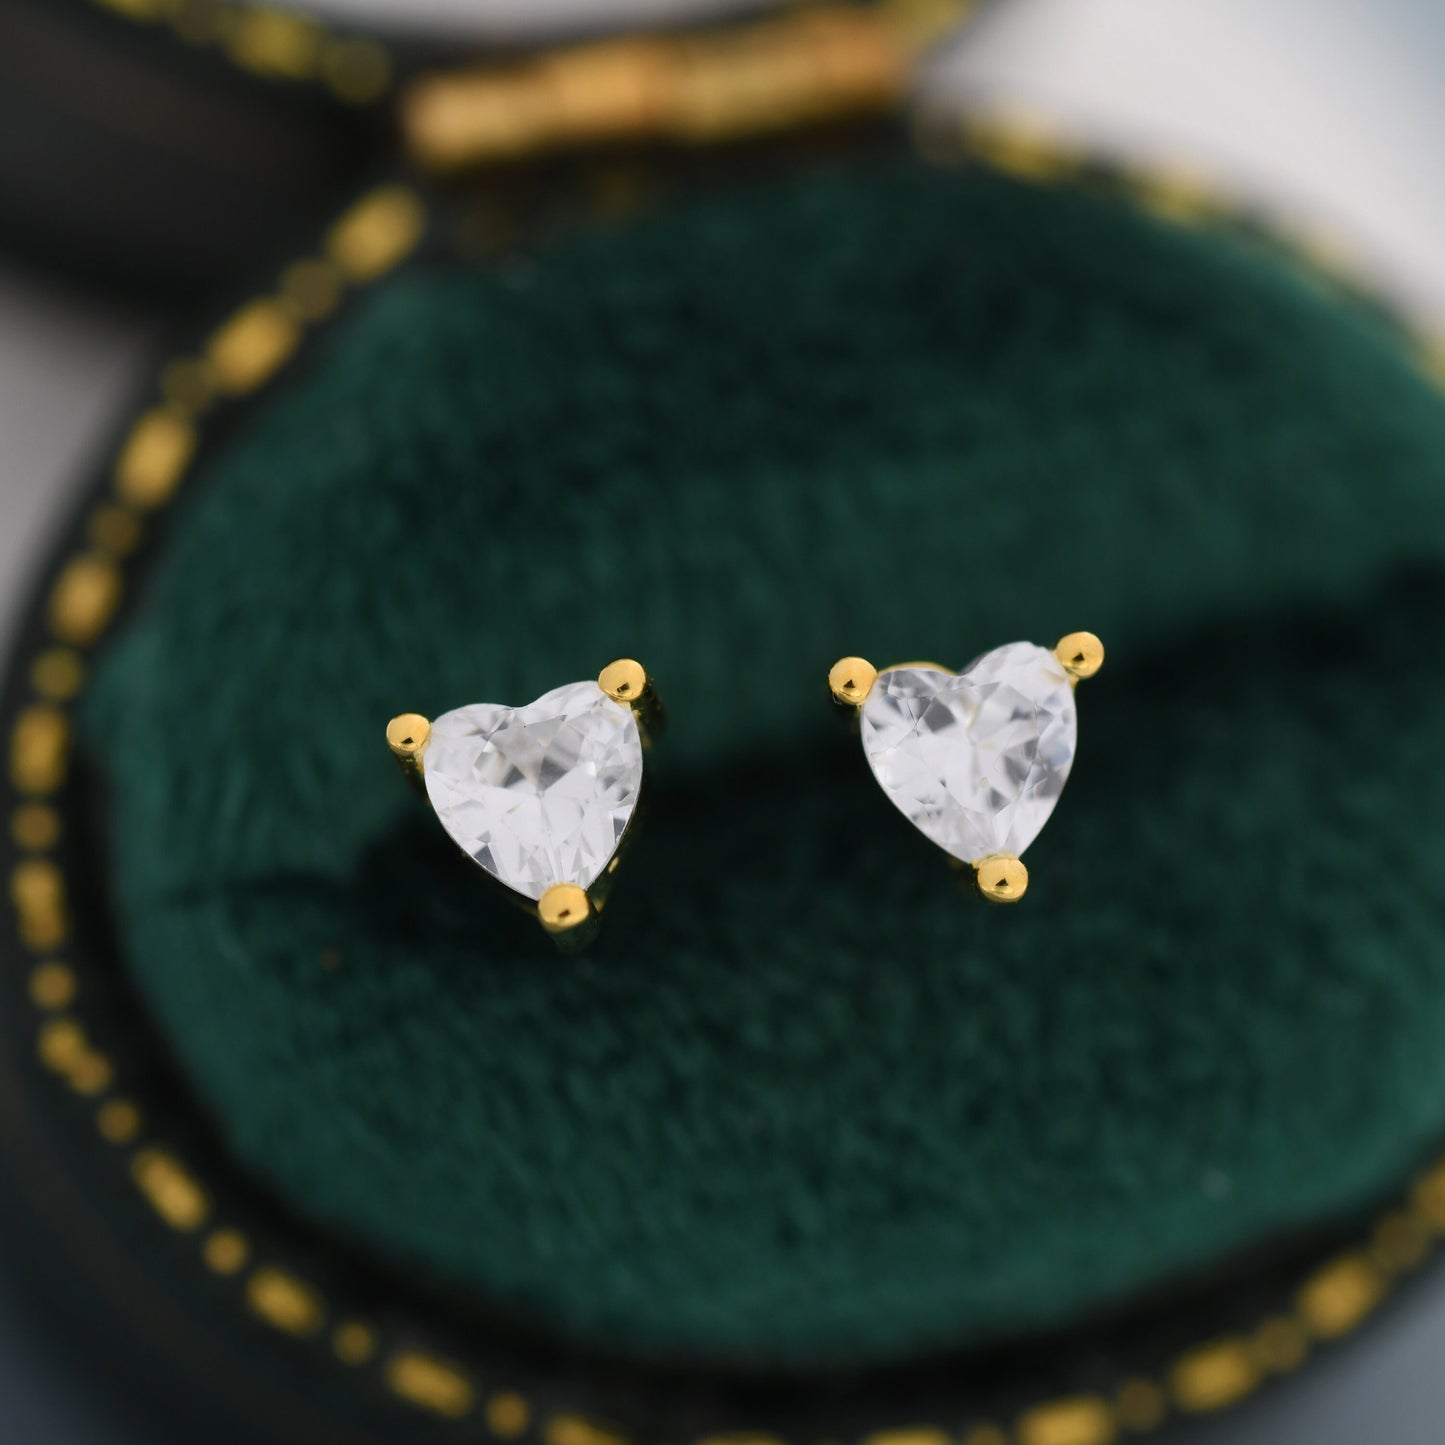 Tiny CZ Heart Stud Earrings in Sterling Silver, Silver or Gold,  Diamond CZ Crystal Heart Earrings, Stacking Earrings